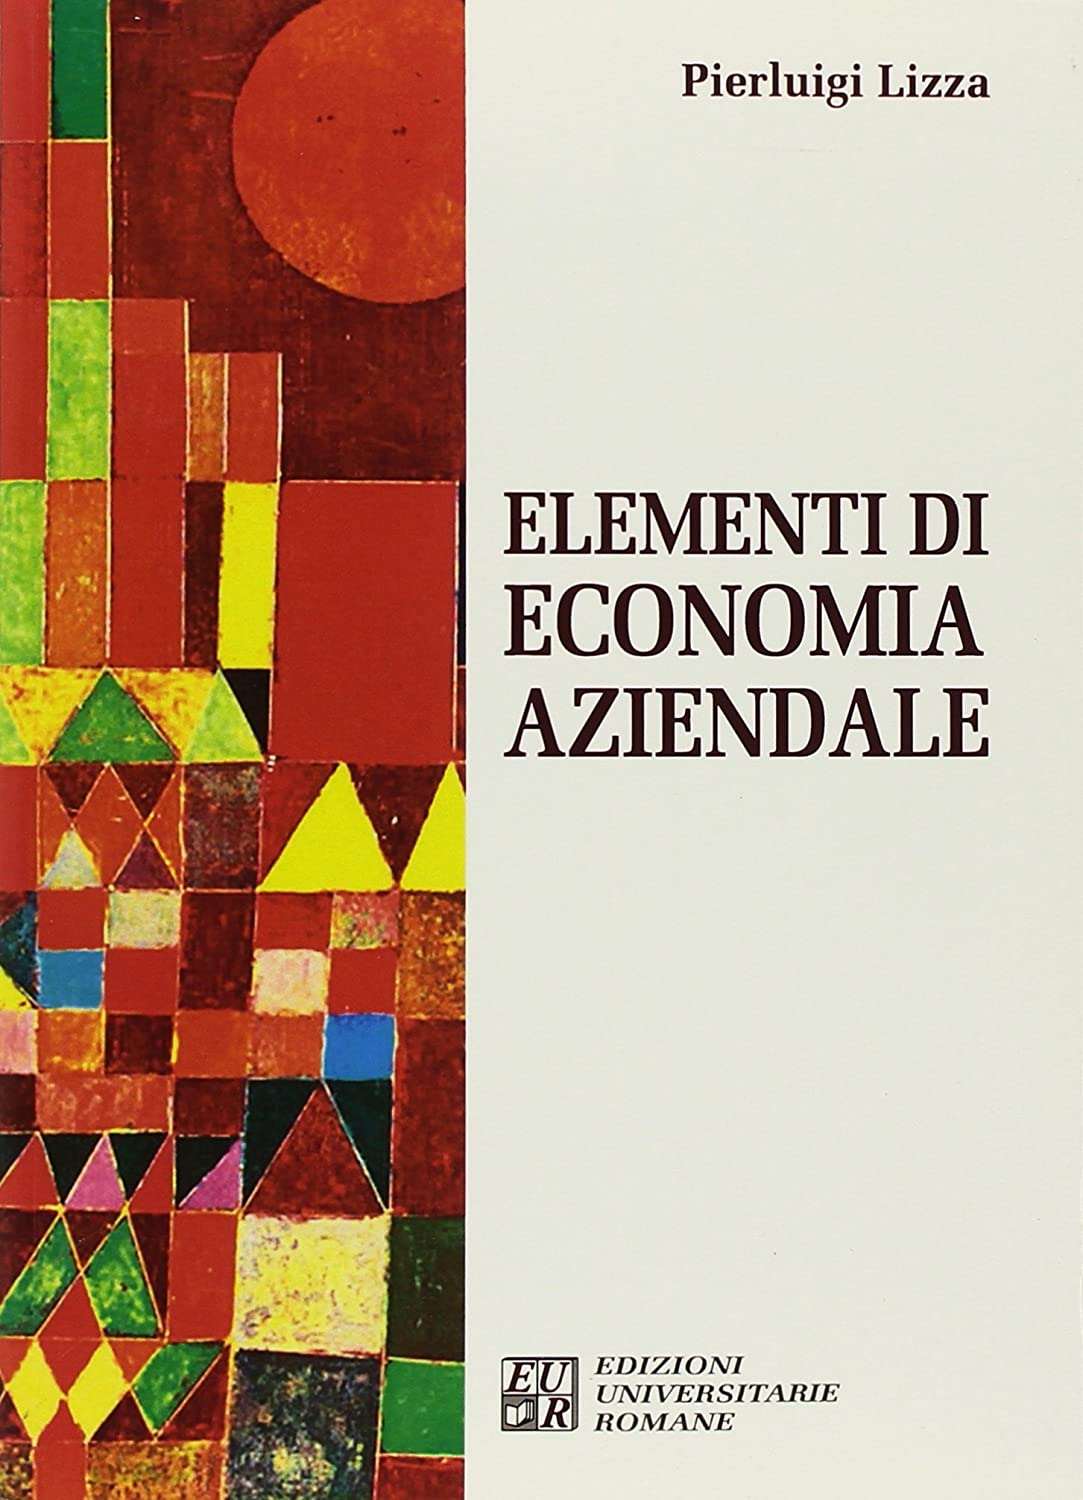 Libri Pierluigi Lizza - Elementi Di Economia Aziendale NUOVO SIGILLATO, EDIZIONE DEL 02/05/2018 SUBITO DISPONIBILE